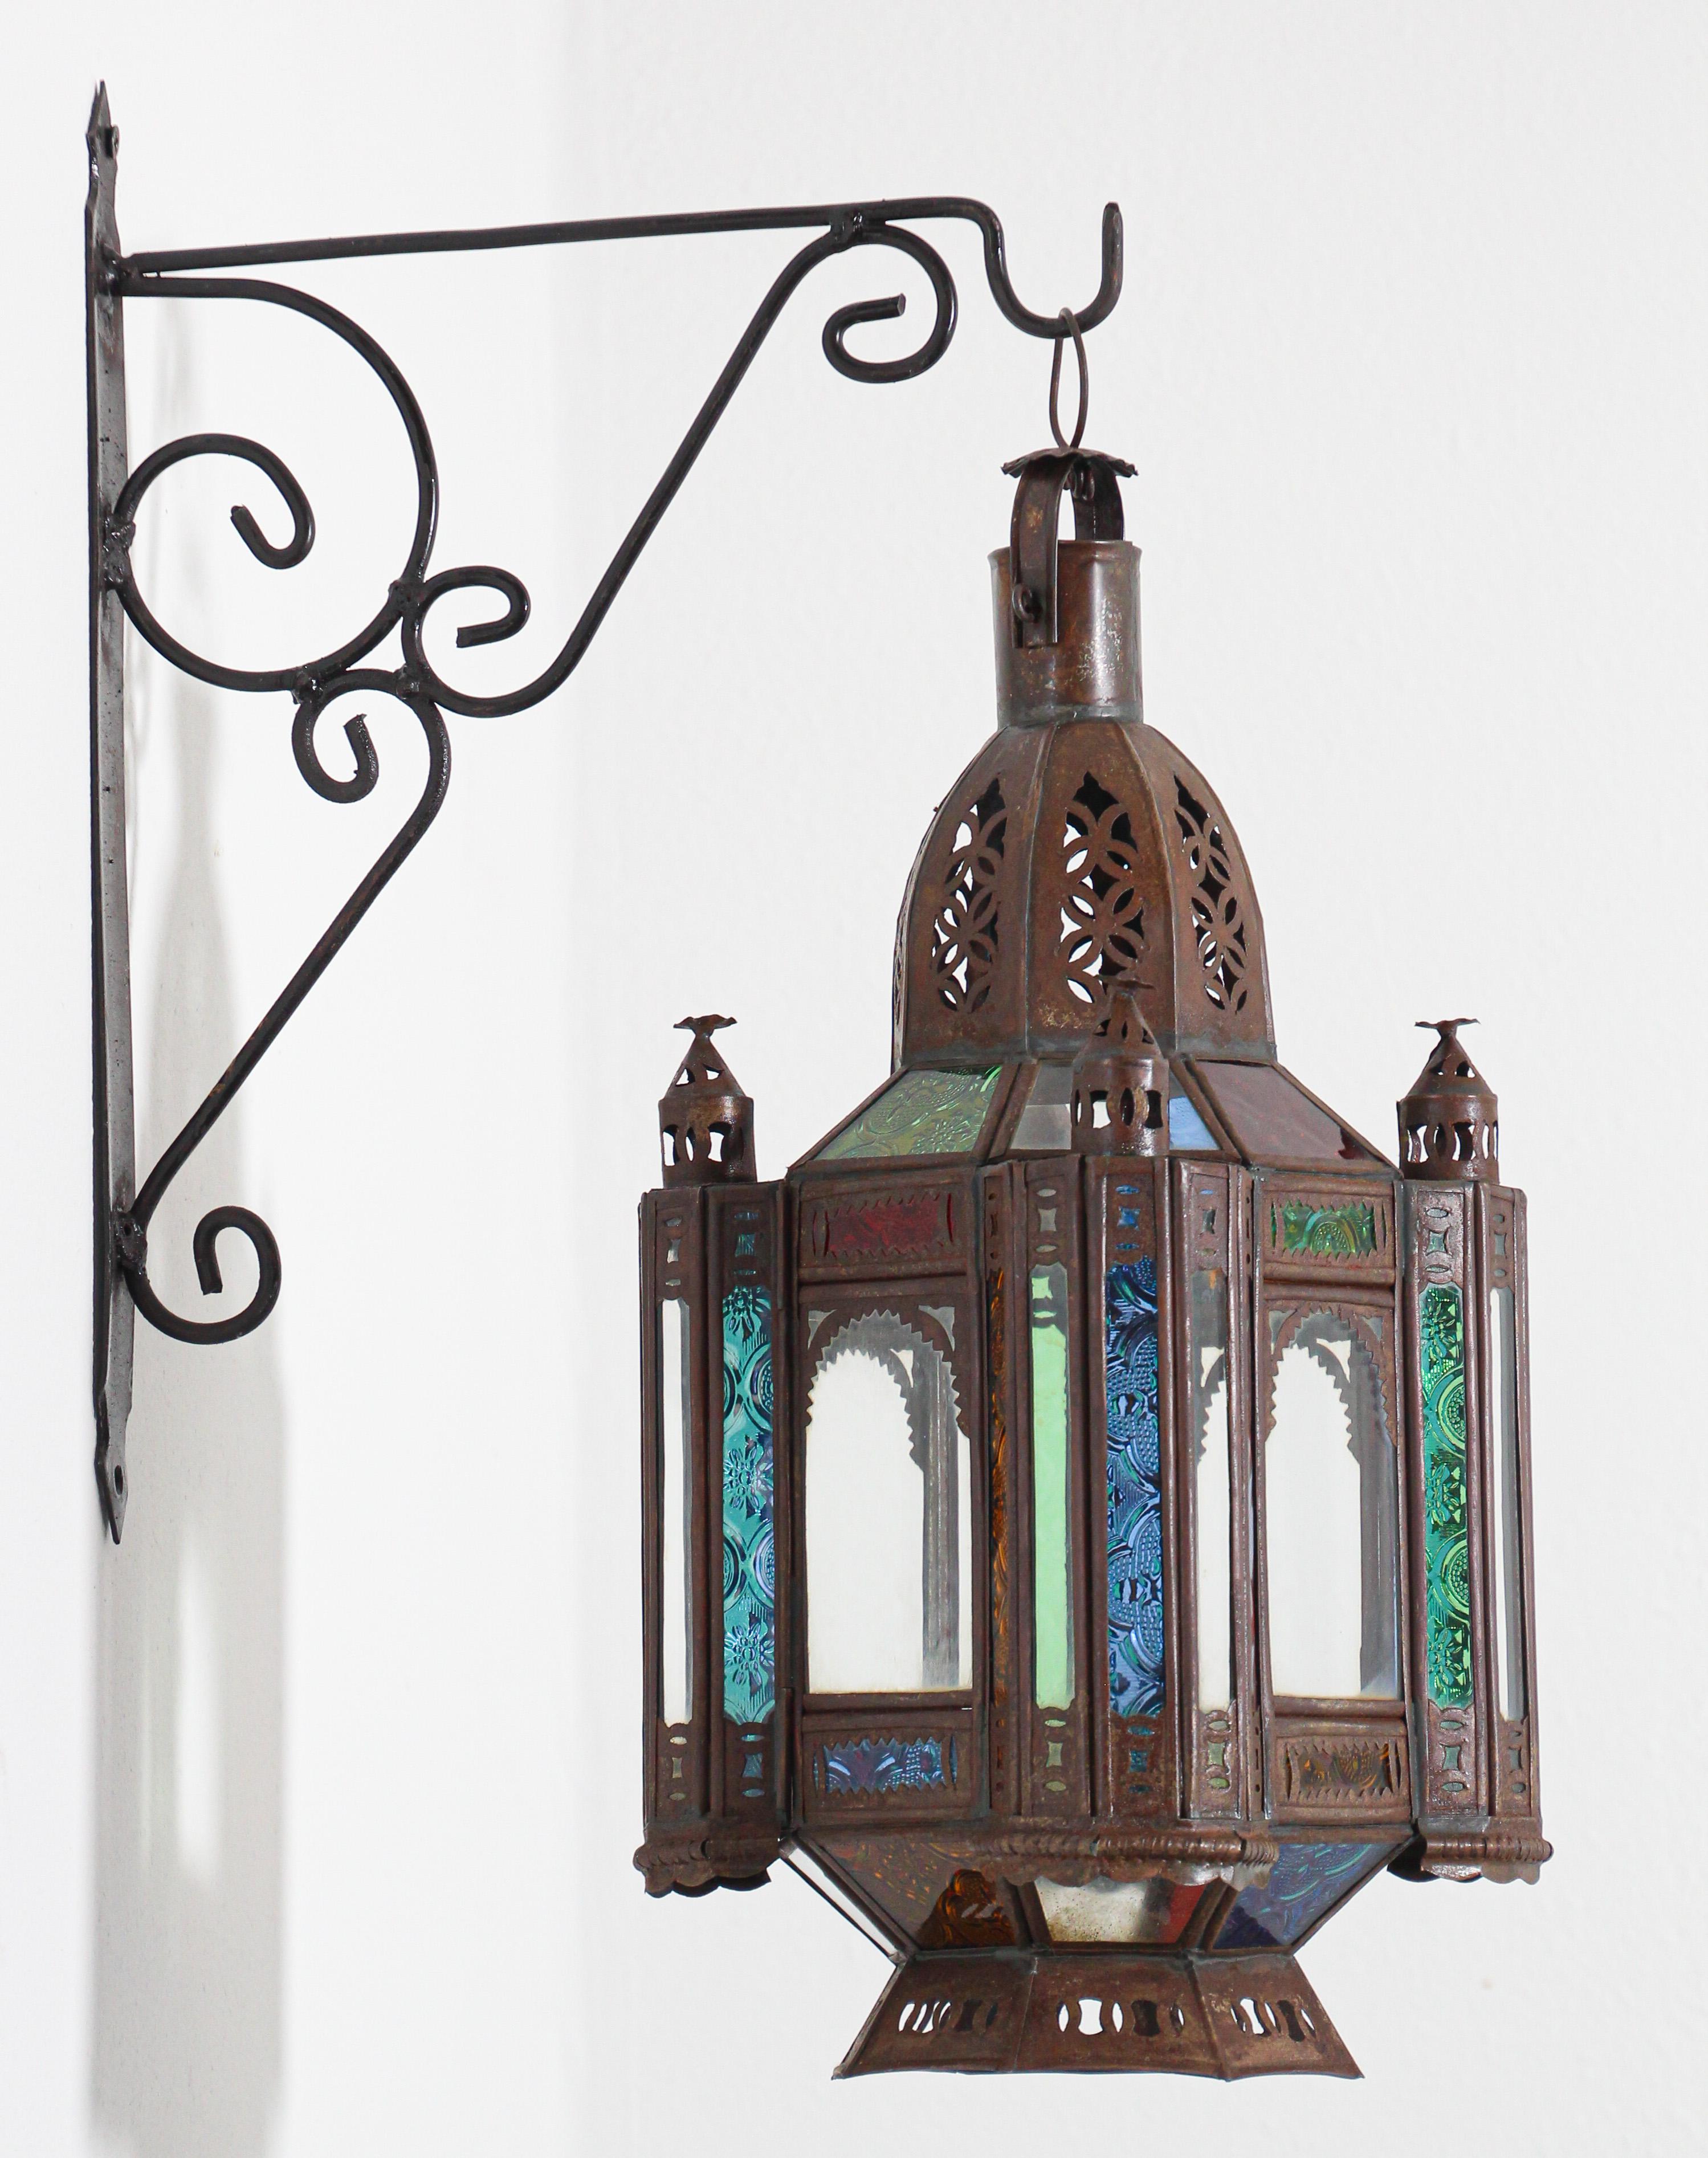 Lanterne de bougie vintage marocaine mauresque en métal et verre coloré
Petite lanterne marocaine en verre ou pendentif maure fabriqué à la main.
Verre moulé multicolore en vert, lavande, bleu et transparent.
Lampe bougie ouragan fabriquée à la main